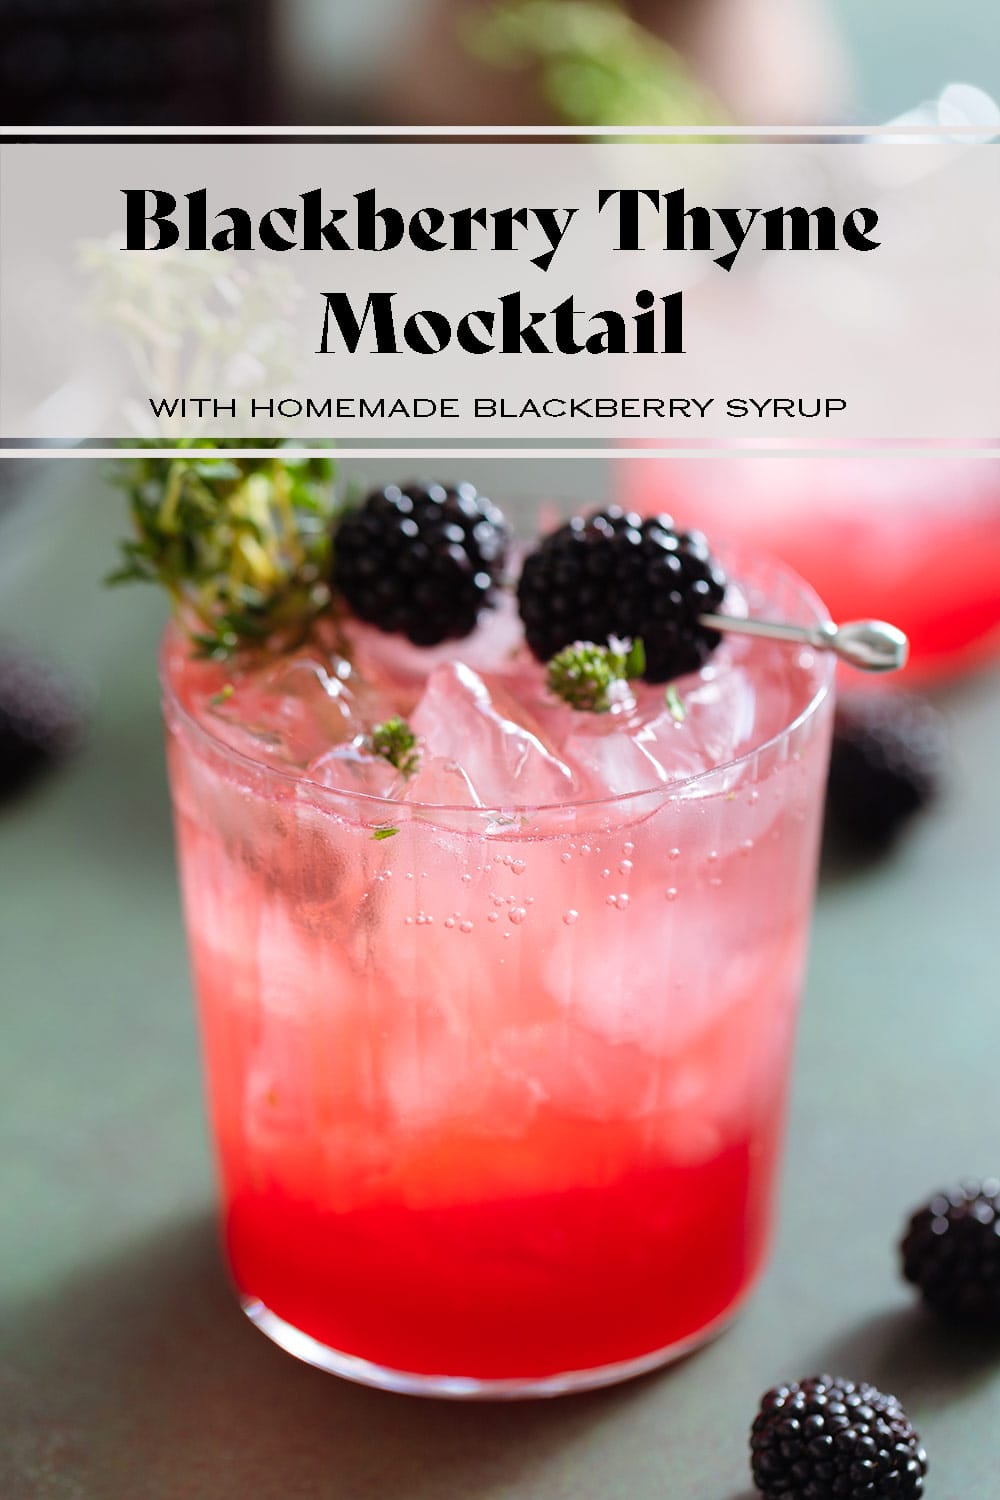 Blackberry Mocktail